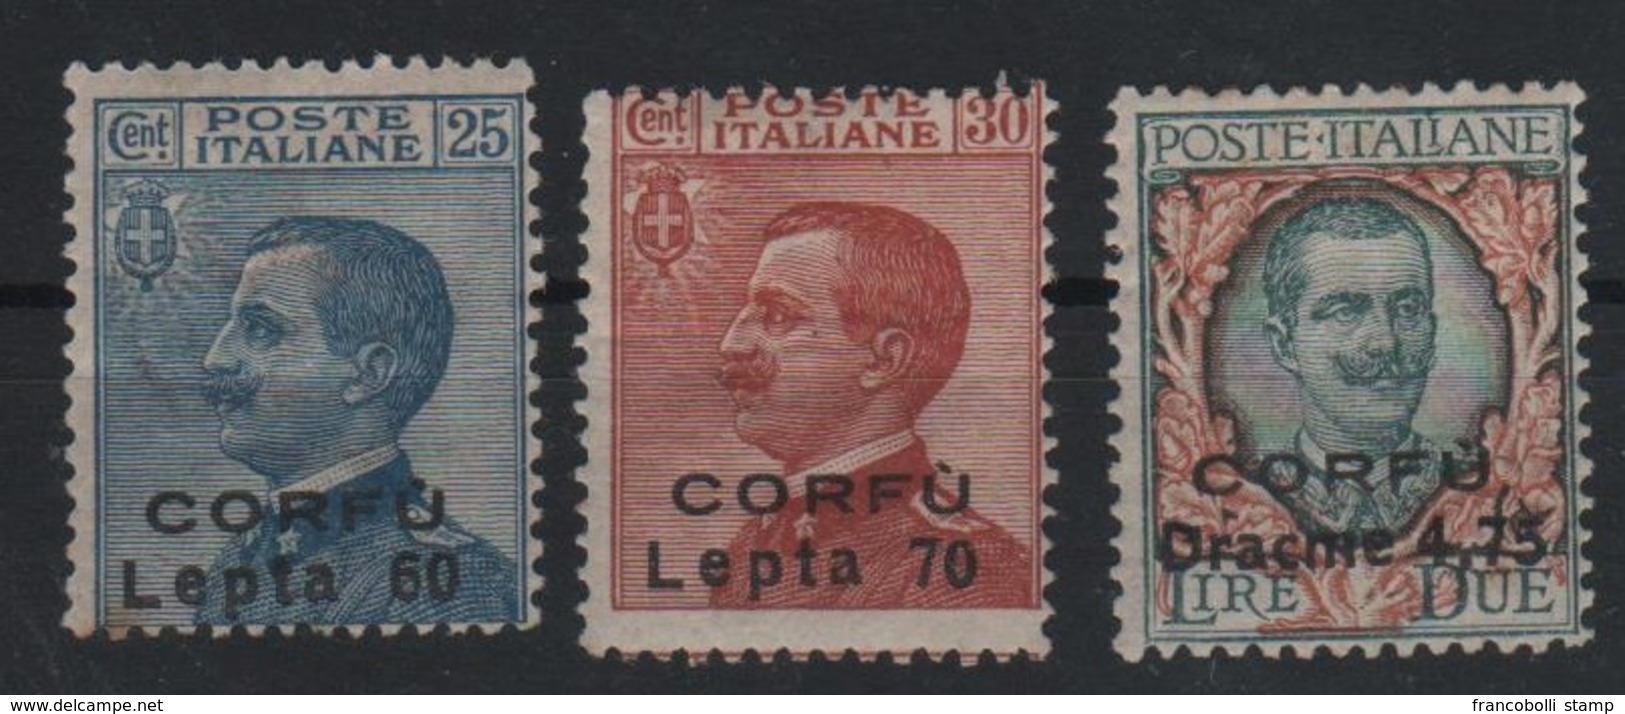 1923 Occupazione Corfù Francobolli D'Italia Sopr. CORFU Serie Cpl MLH Non Emessi - Corfou